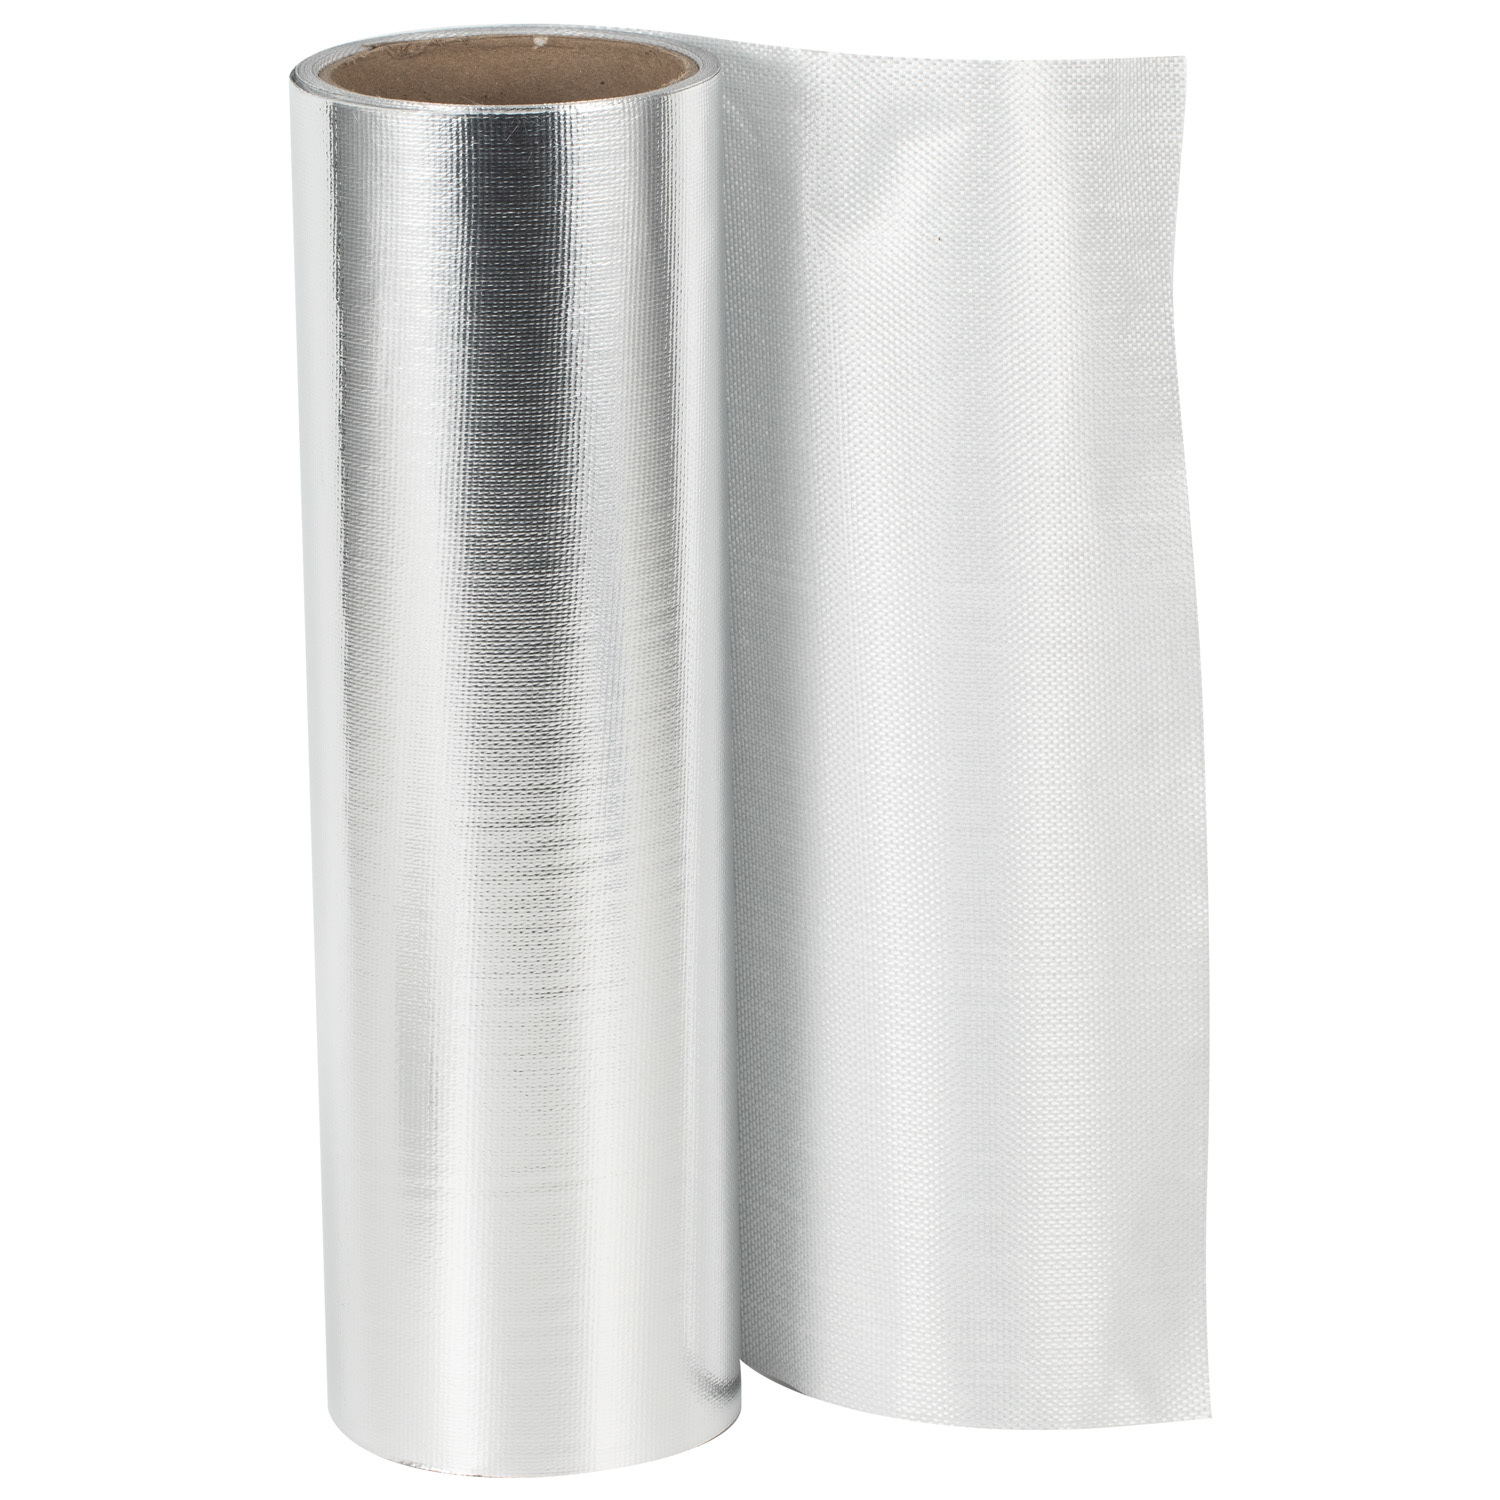 Al-110 Aluminum Foil Fireproof Cloth